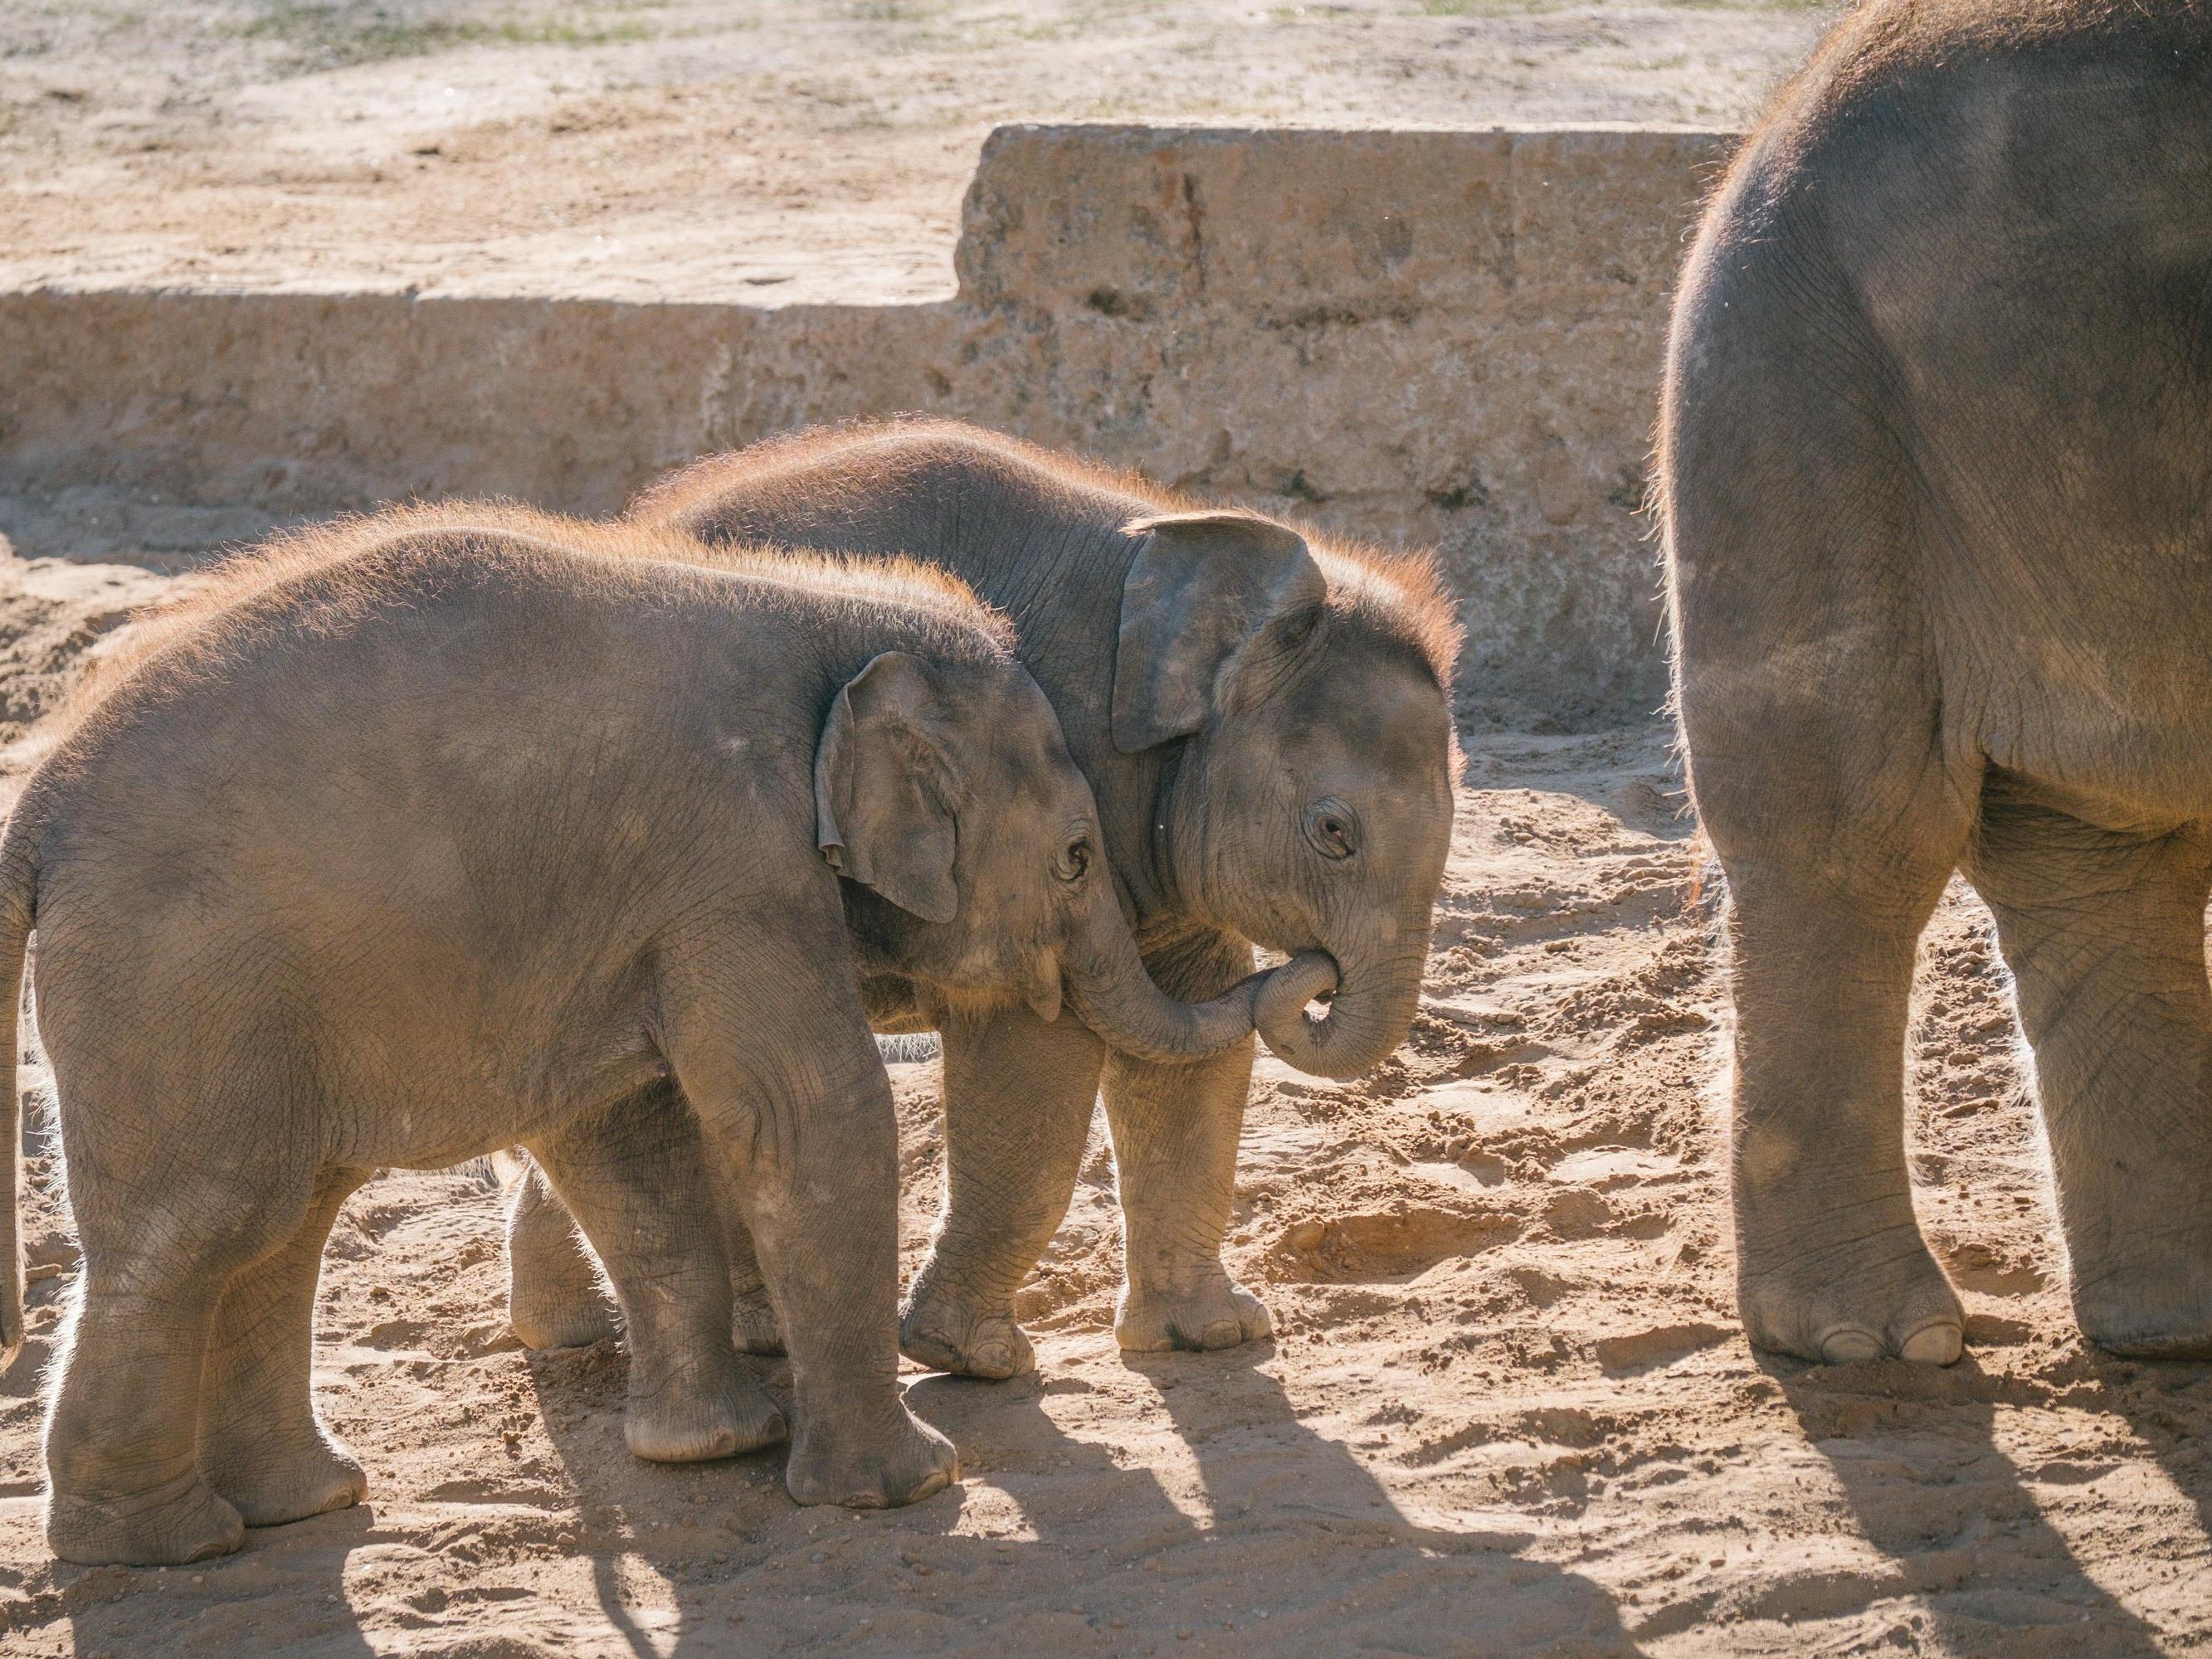 Elefantenbabys im Zoo Hannover. Peta wirft den Pflegern des Tierparks vor, sie würden die Elefanten bei der Dressur quälen.